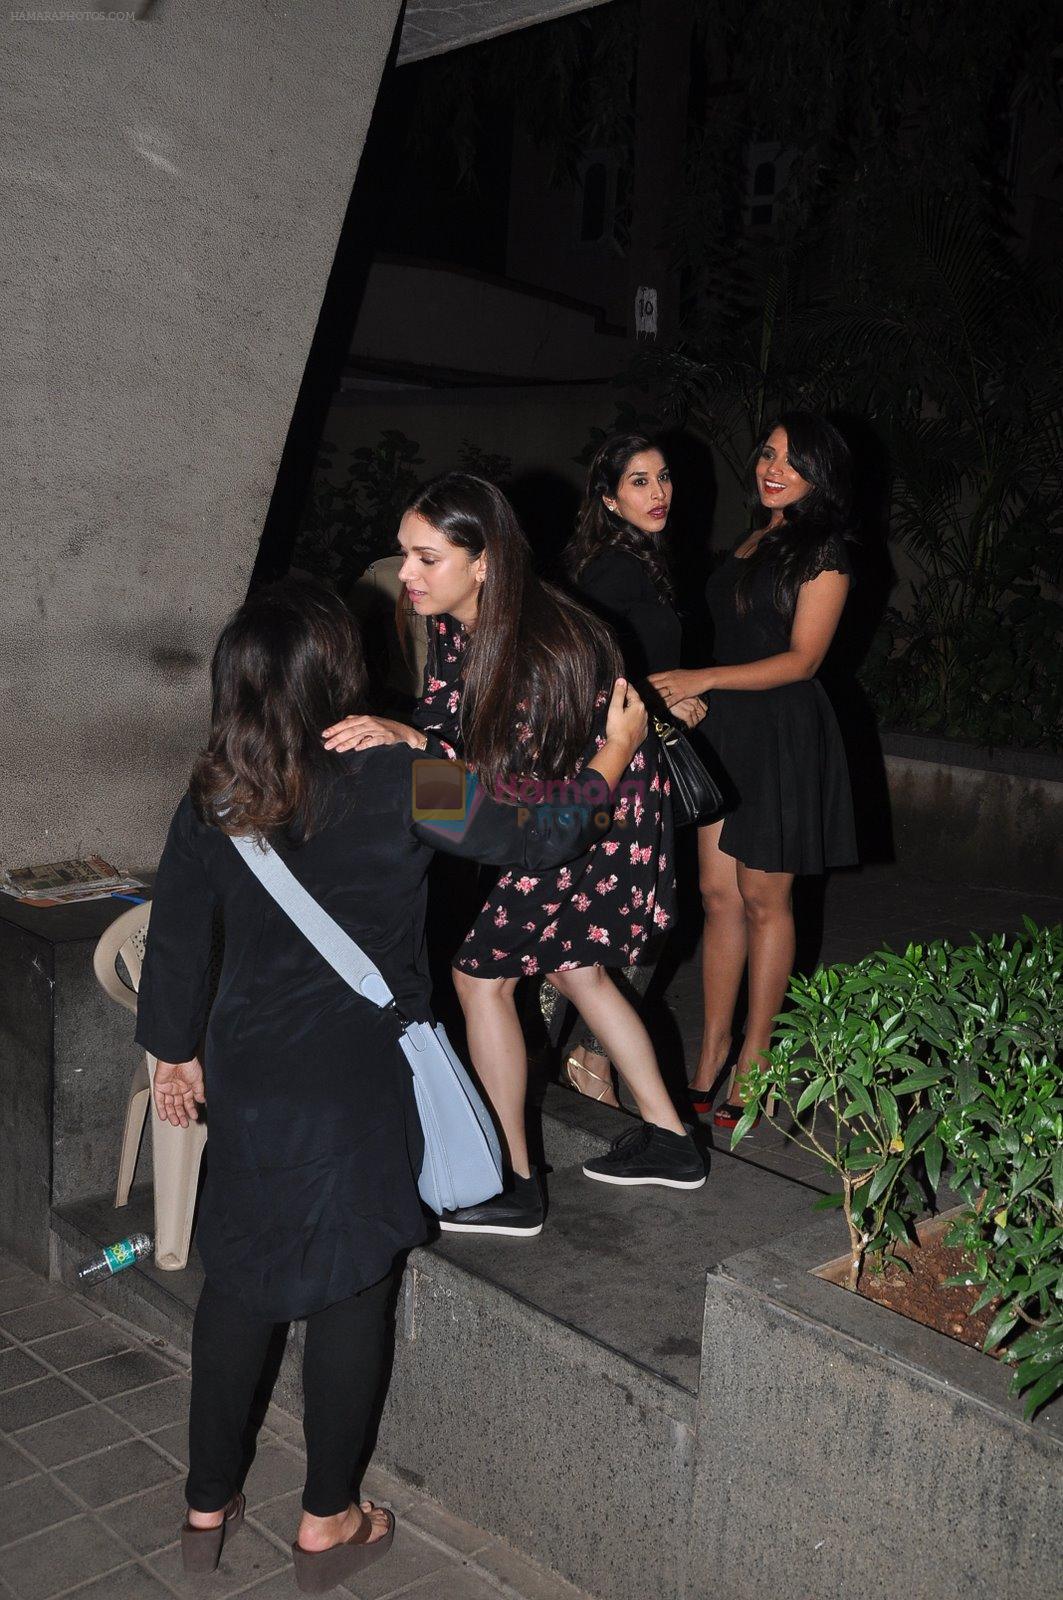 Sophie Chaudhary, Aditi Rao Hydari, Richa Chadda at Manish Malhotra's birthday bash in Mumbai on 5th Dec 2014